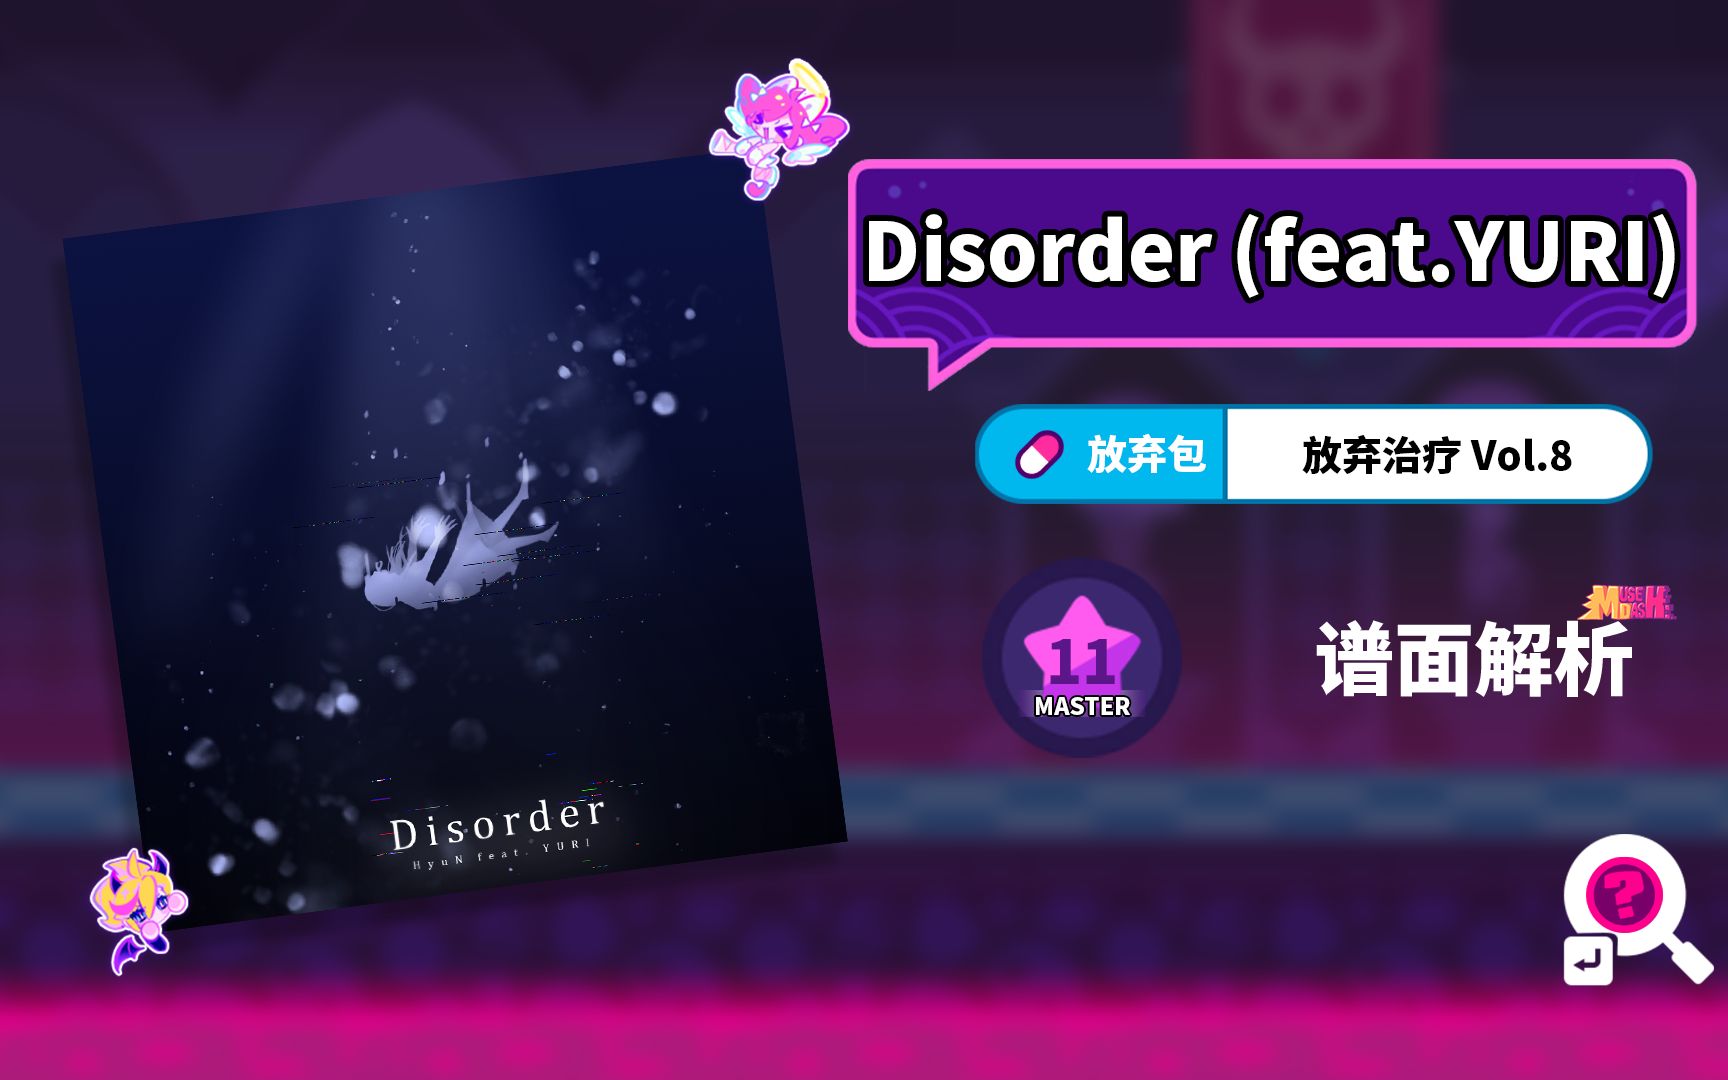 【MuseDash】Disorder (feat.YURI) 谱面解析